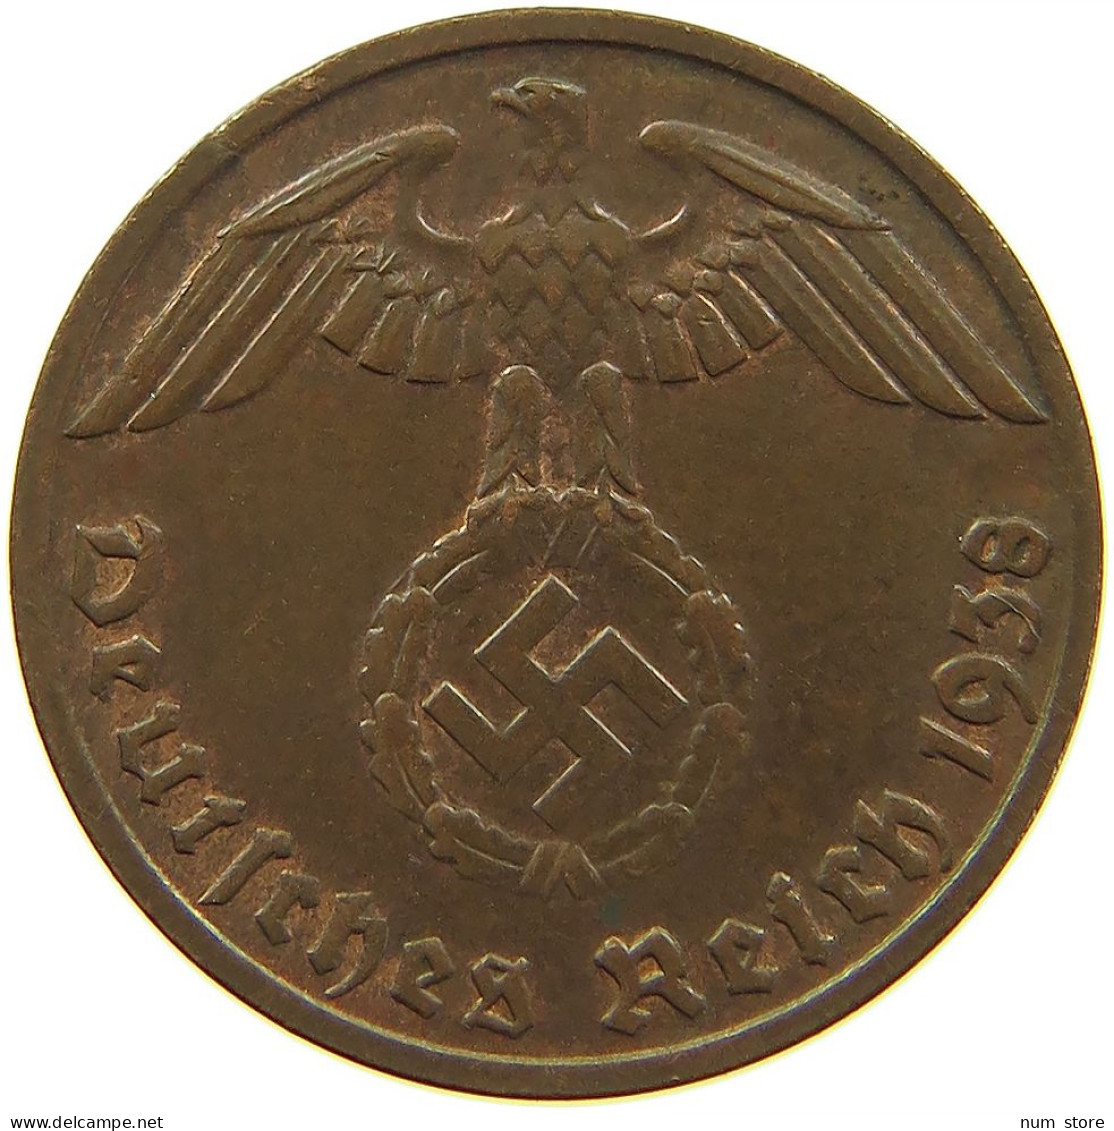 GERMANY 1 REICHSPFENNIG 1938 D #s083 0731 - 1 Reichspfennig